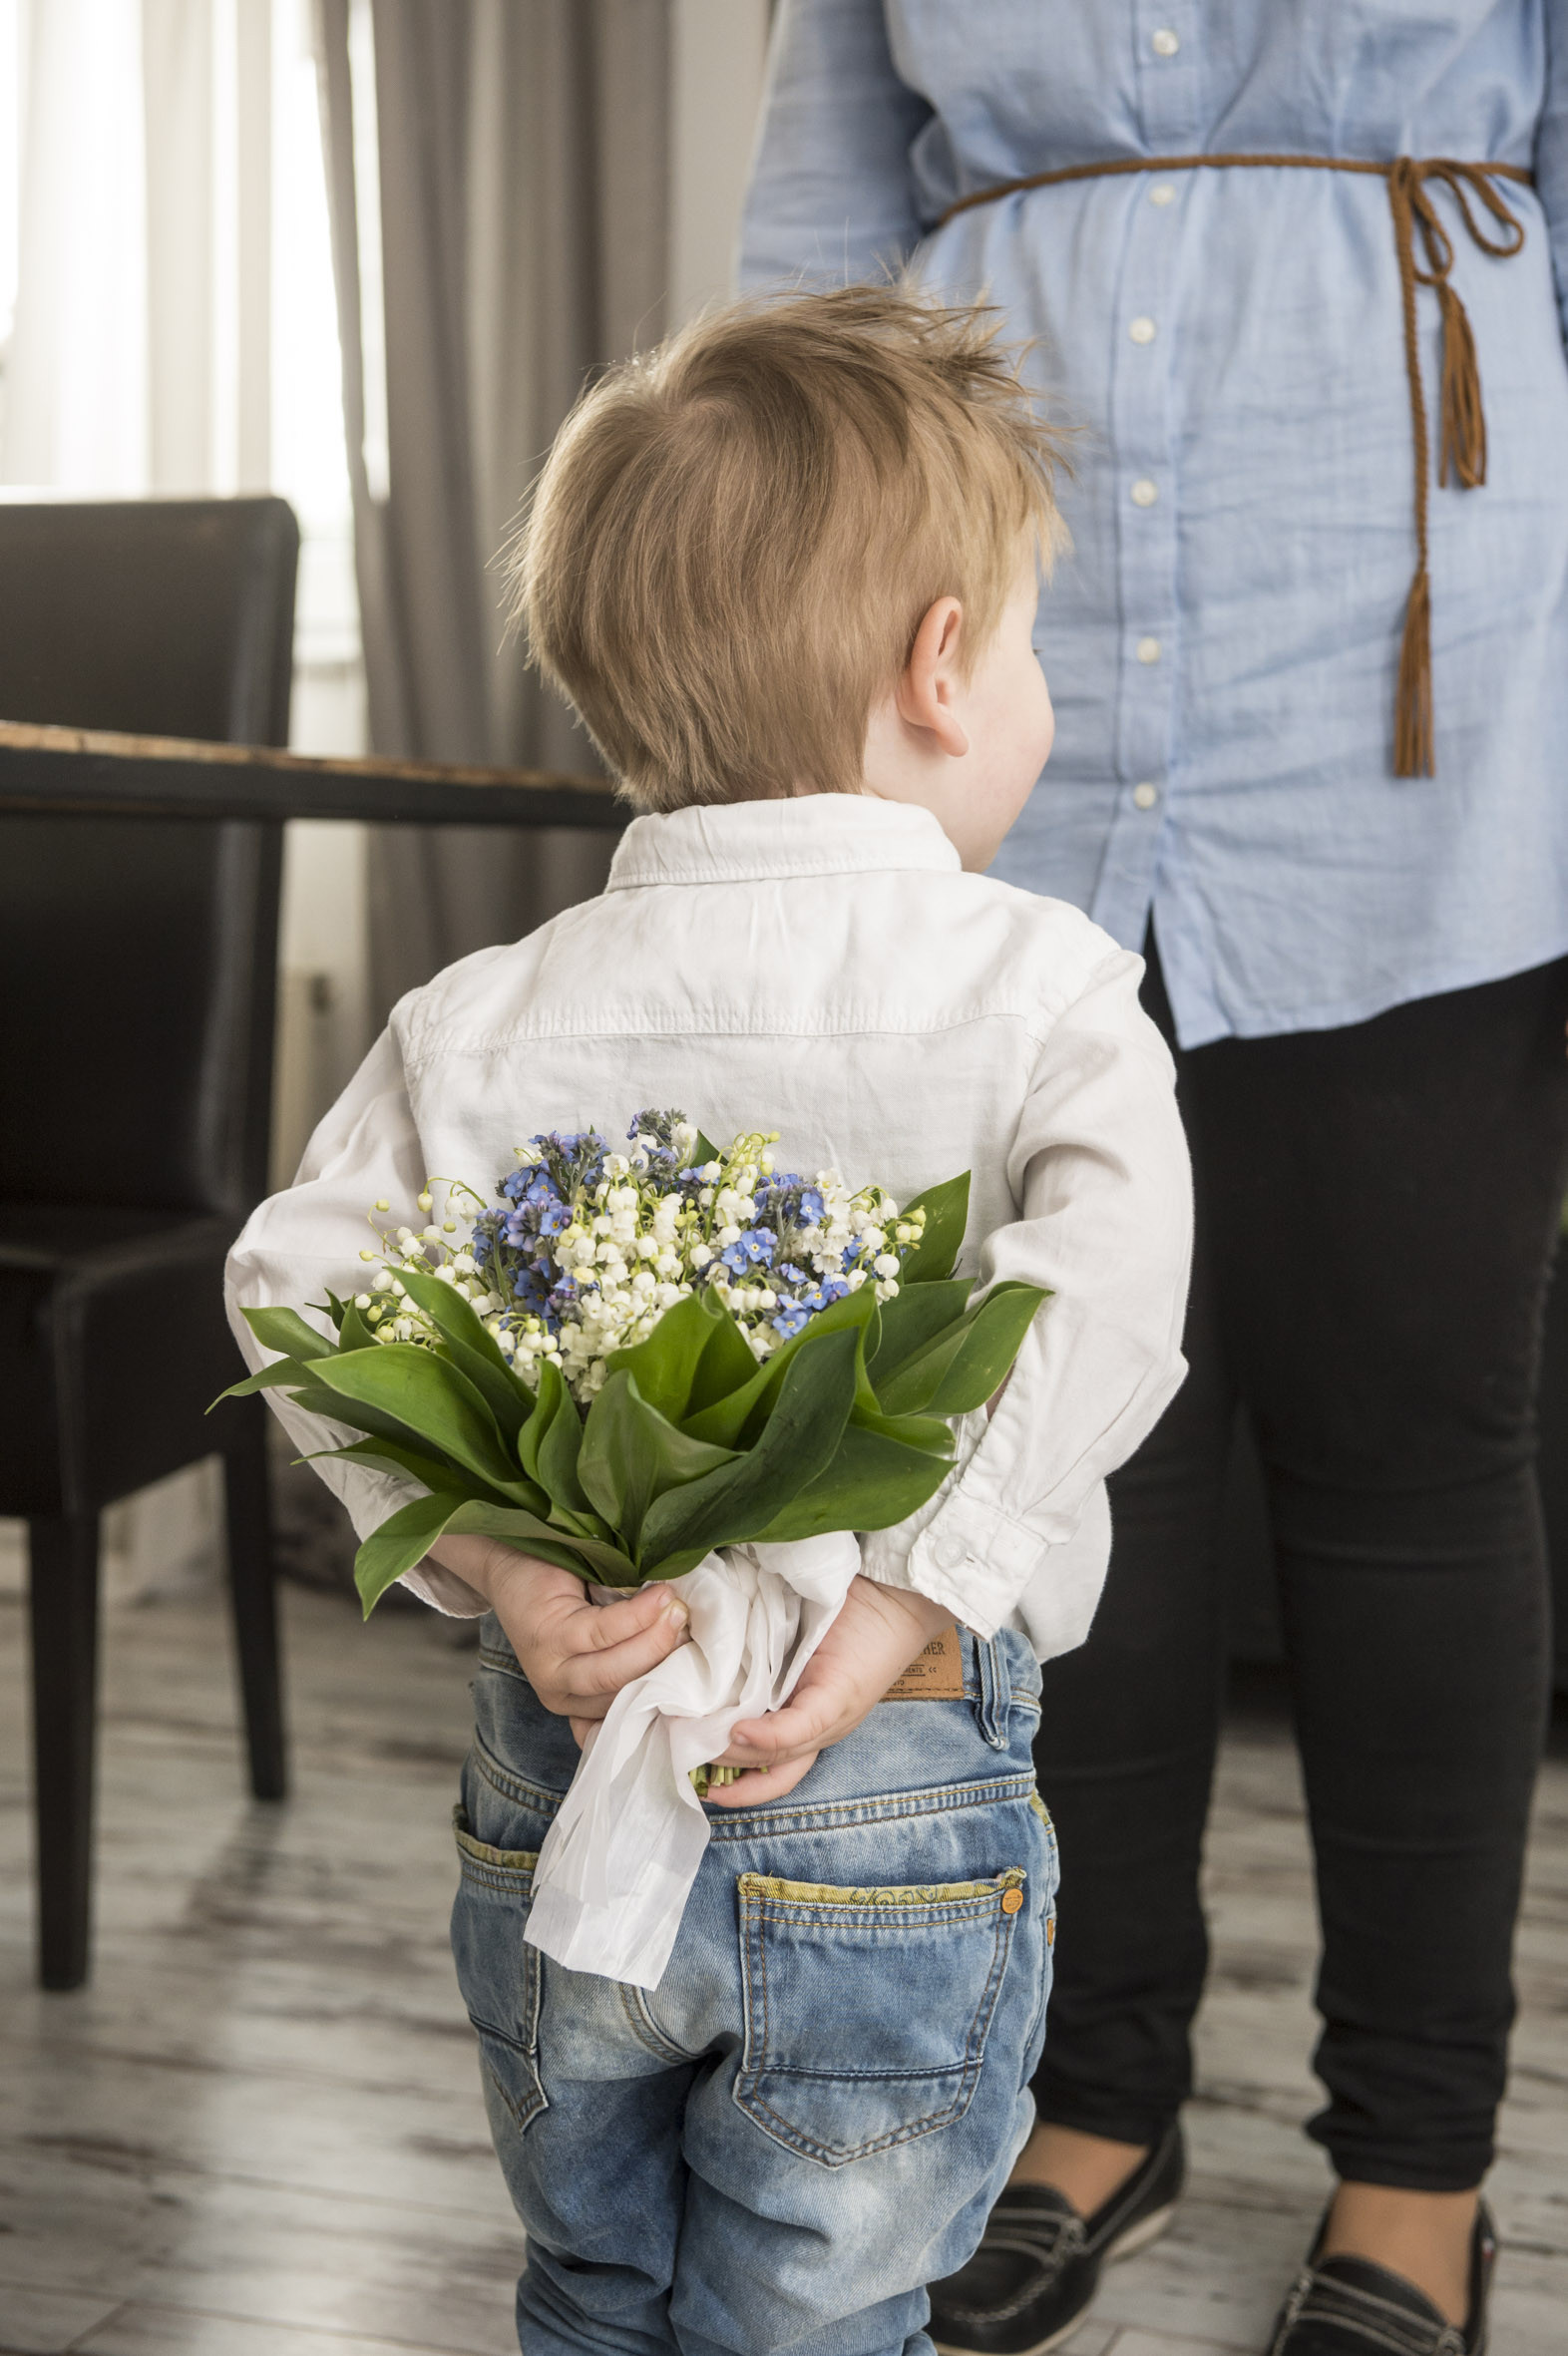 Muttertag 2018 Geschenke
 ihr florist Muttertag am 13 Mai 2018 Blühende